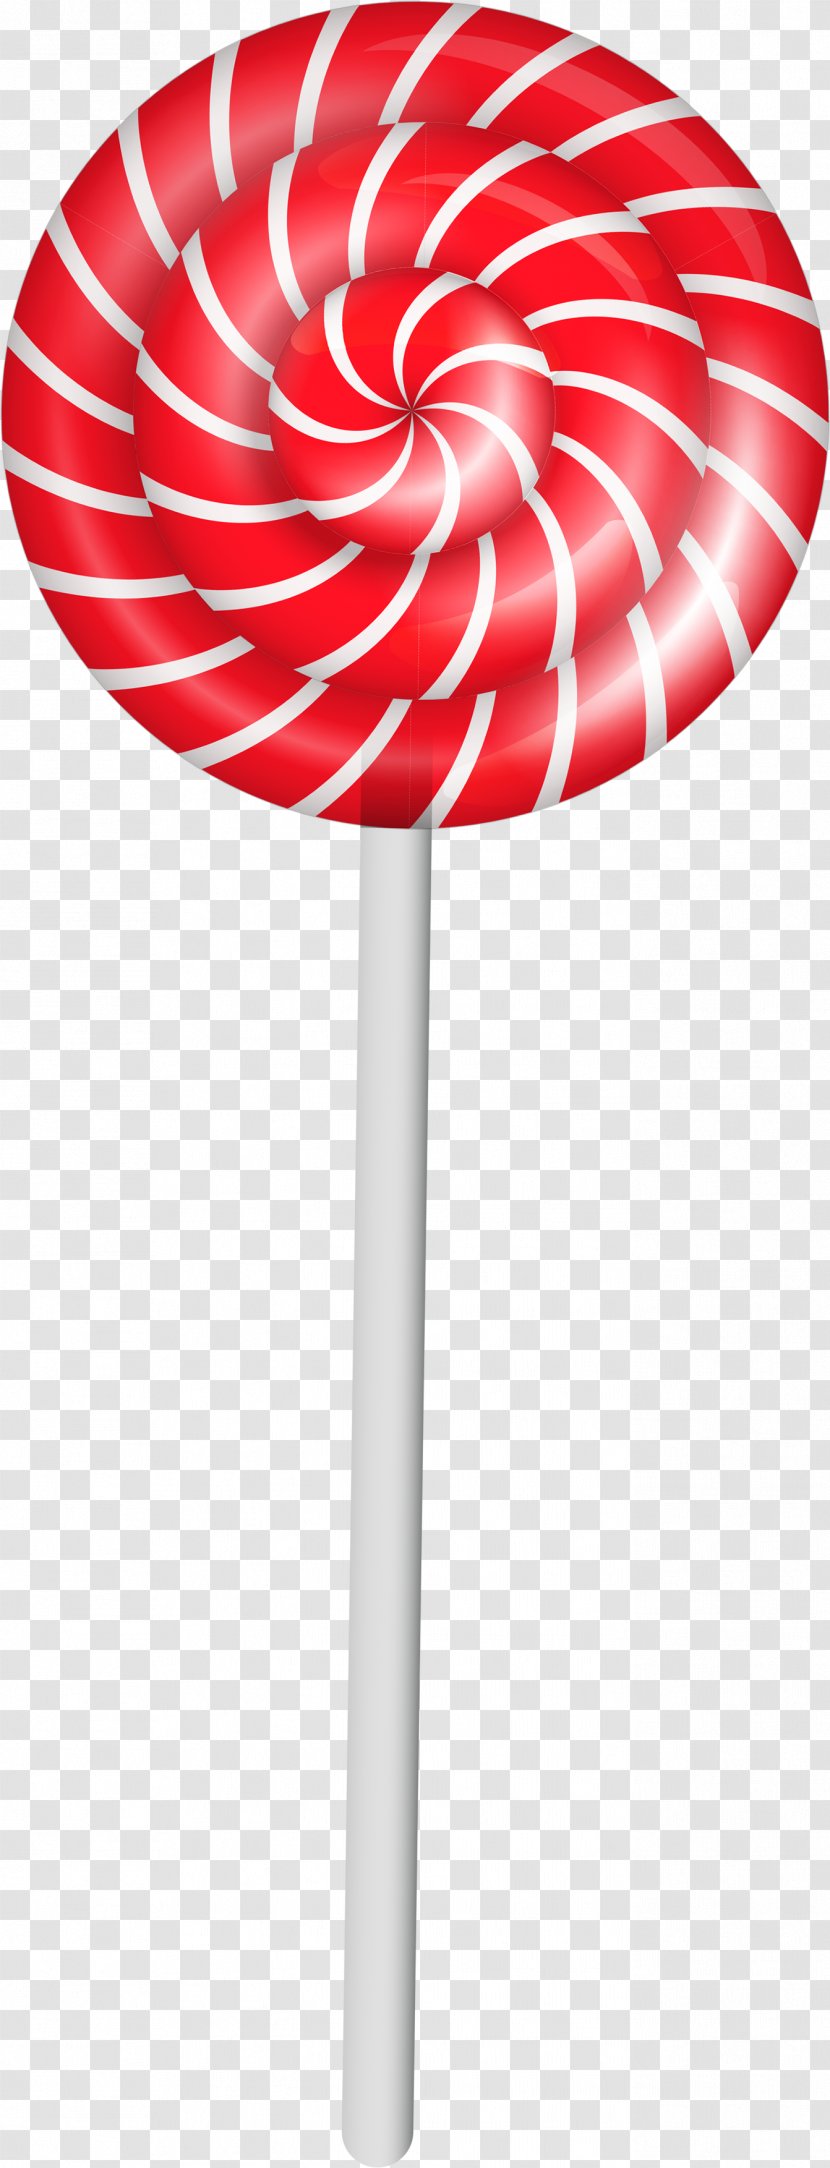 Lollipop Candy Cane Clip Art - Product Design Transparent PNG